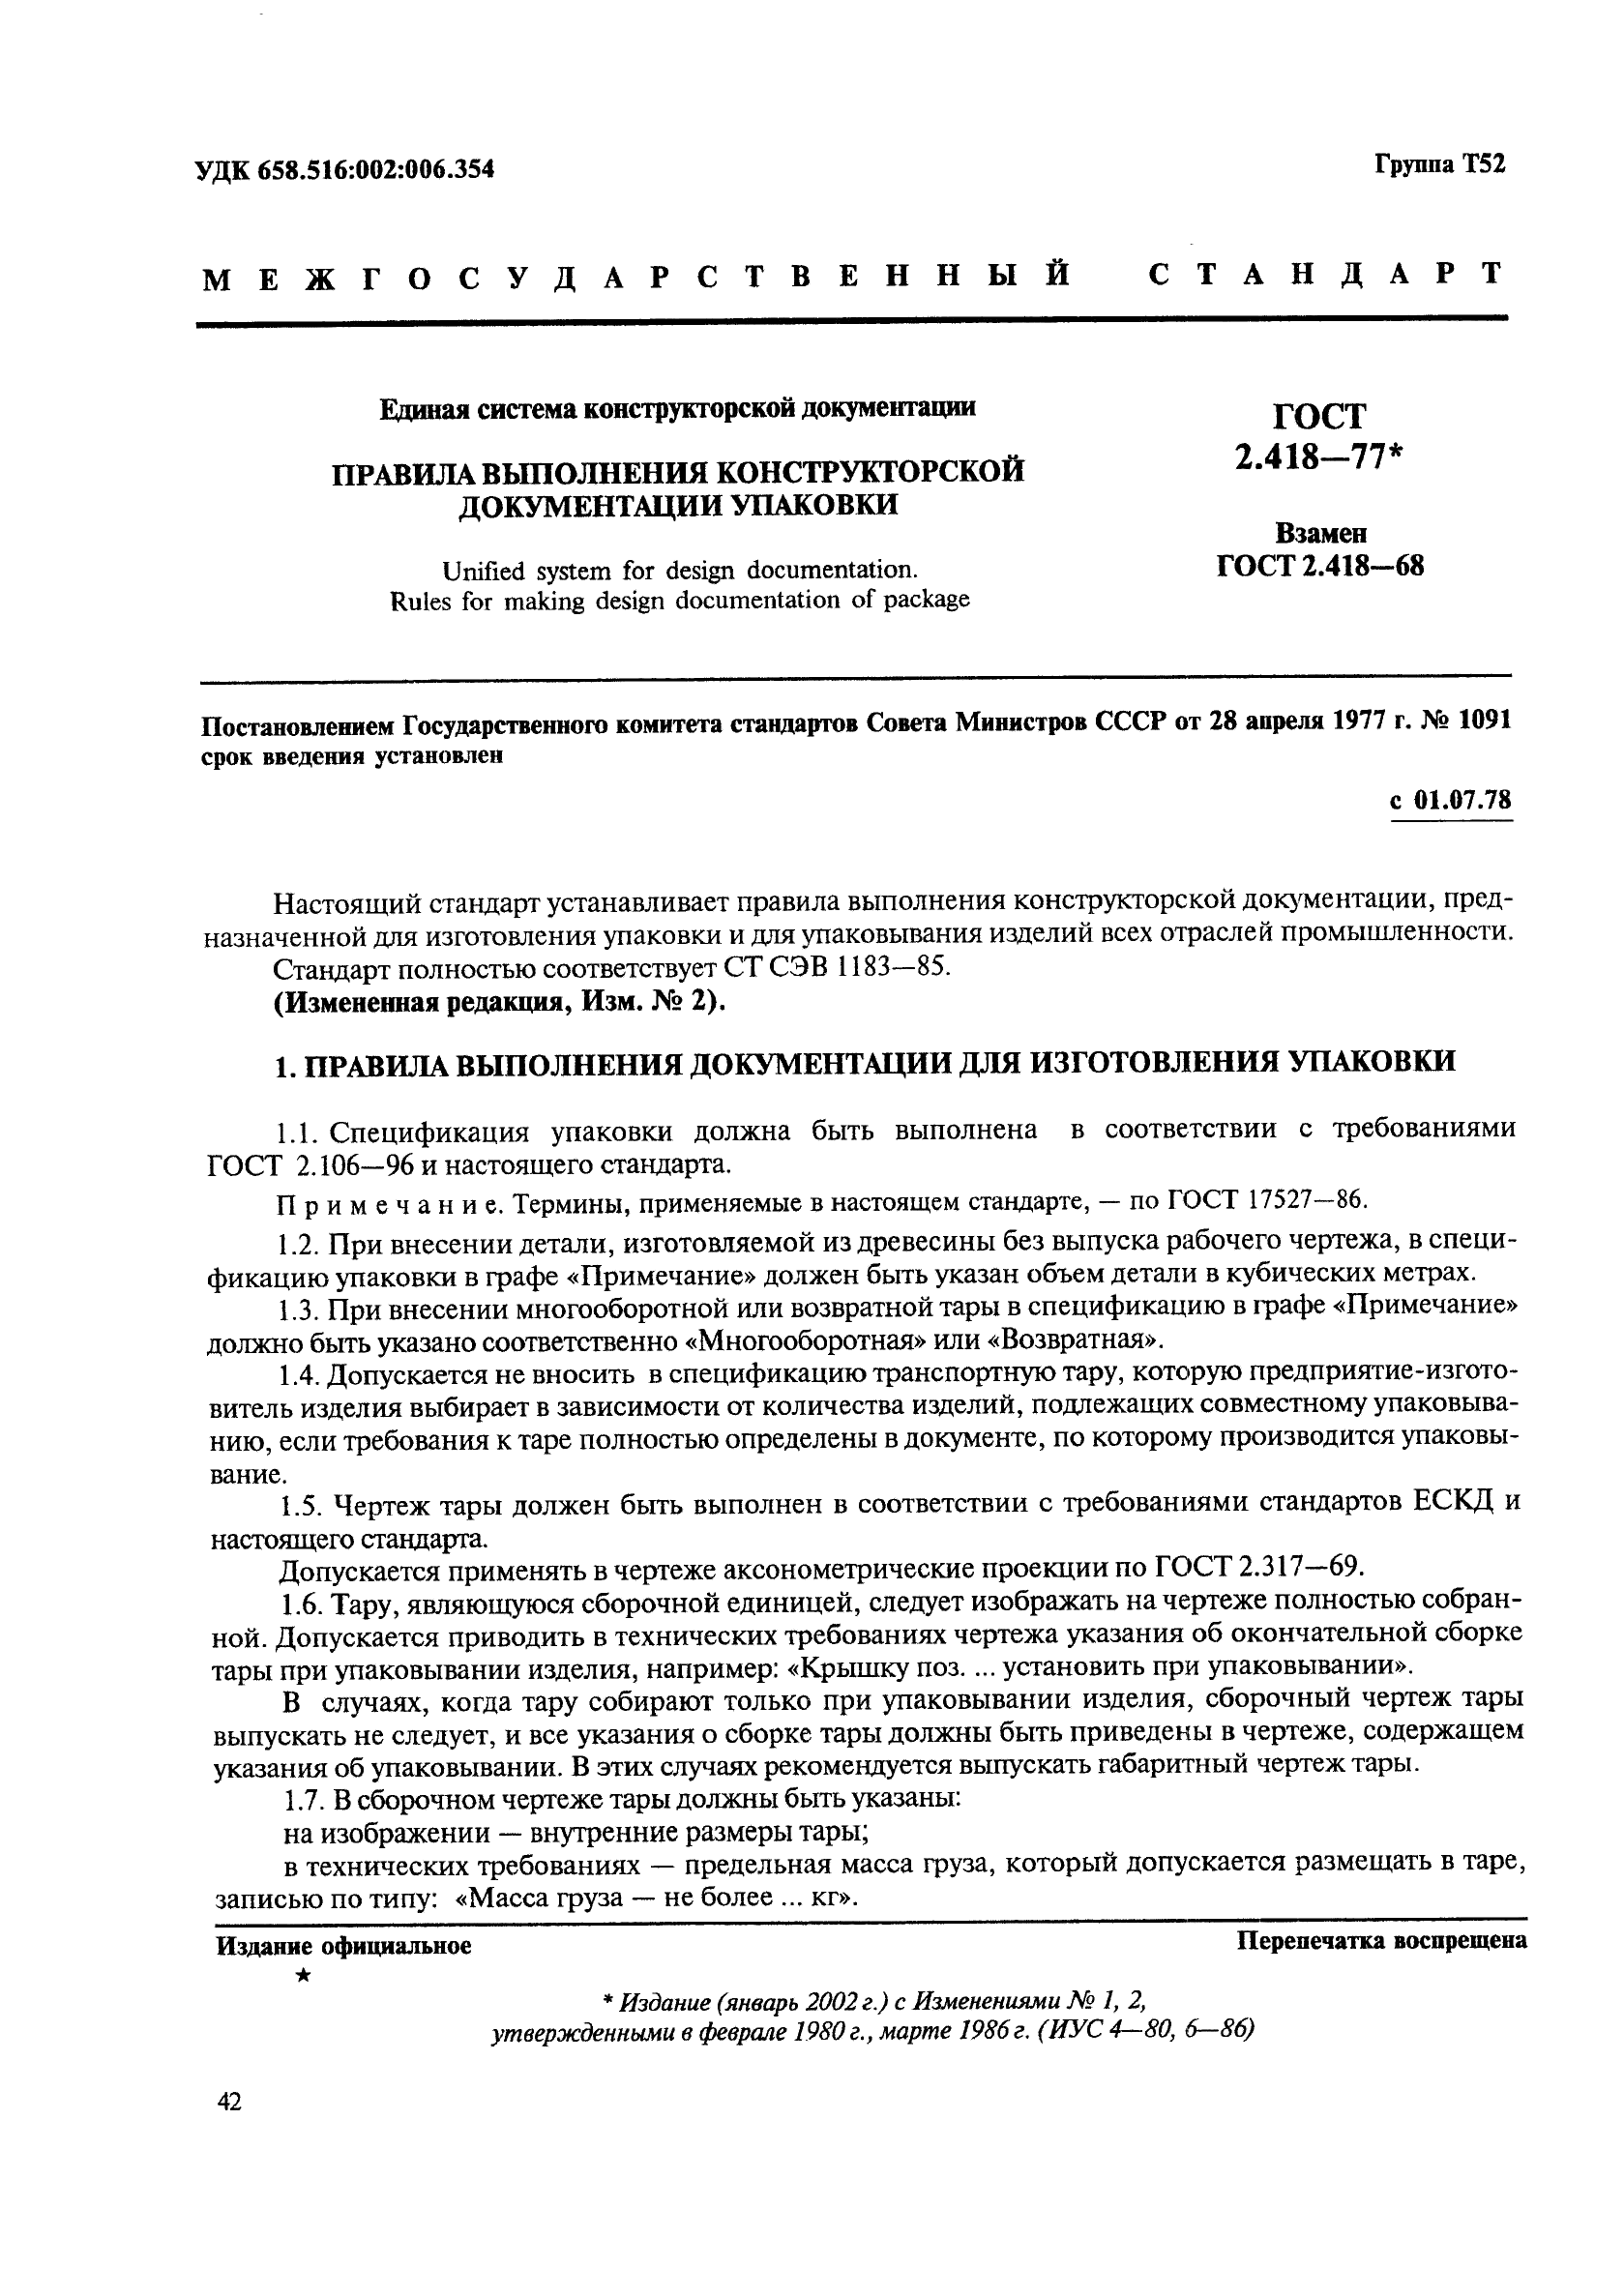 ГОСТ 2.418-77 Единая система конструкторской документации. Правила выполнения конструкторской документации упаковки (фото 1 из 5)